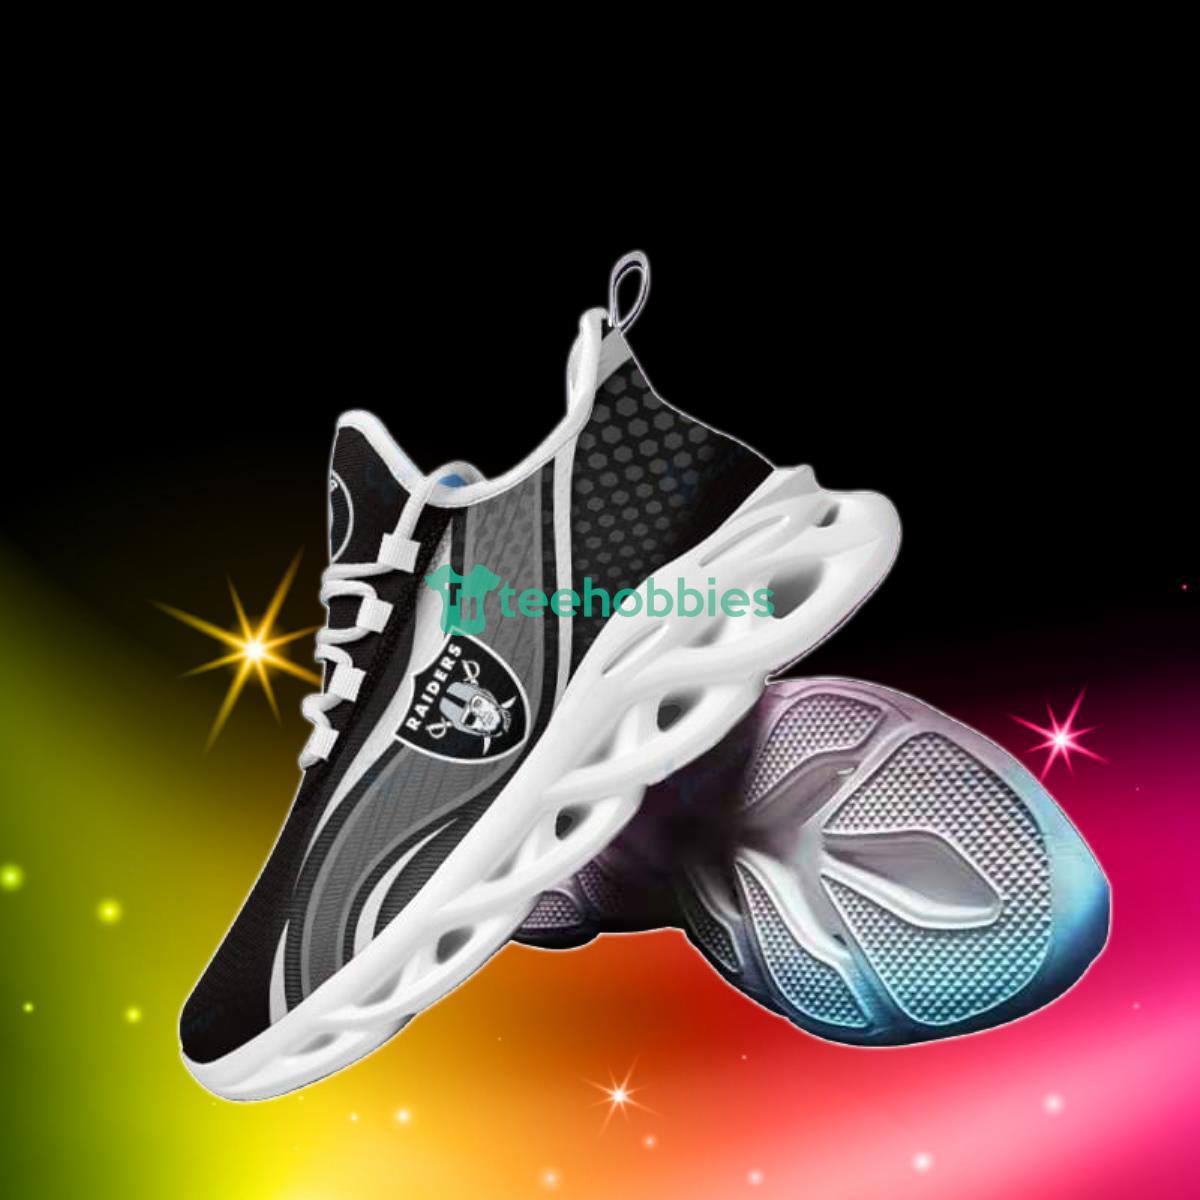 Las Vegas Raiders  Max Soul Shoes Hot Design For Fans Product Photo 1